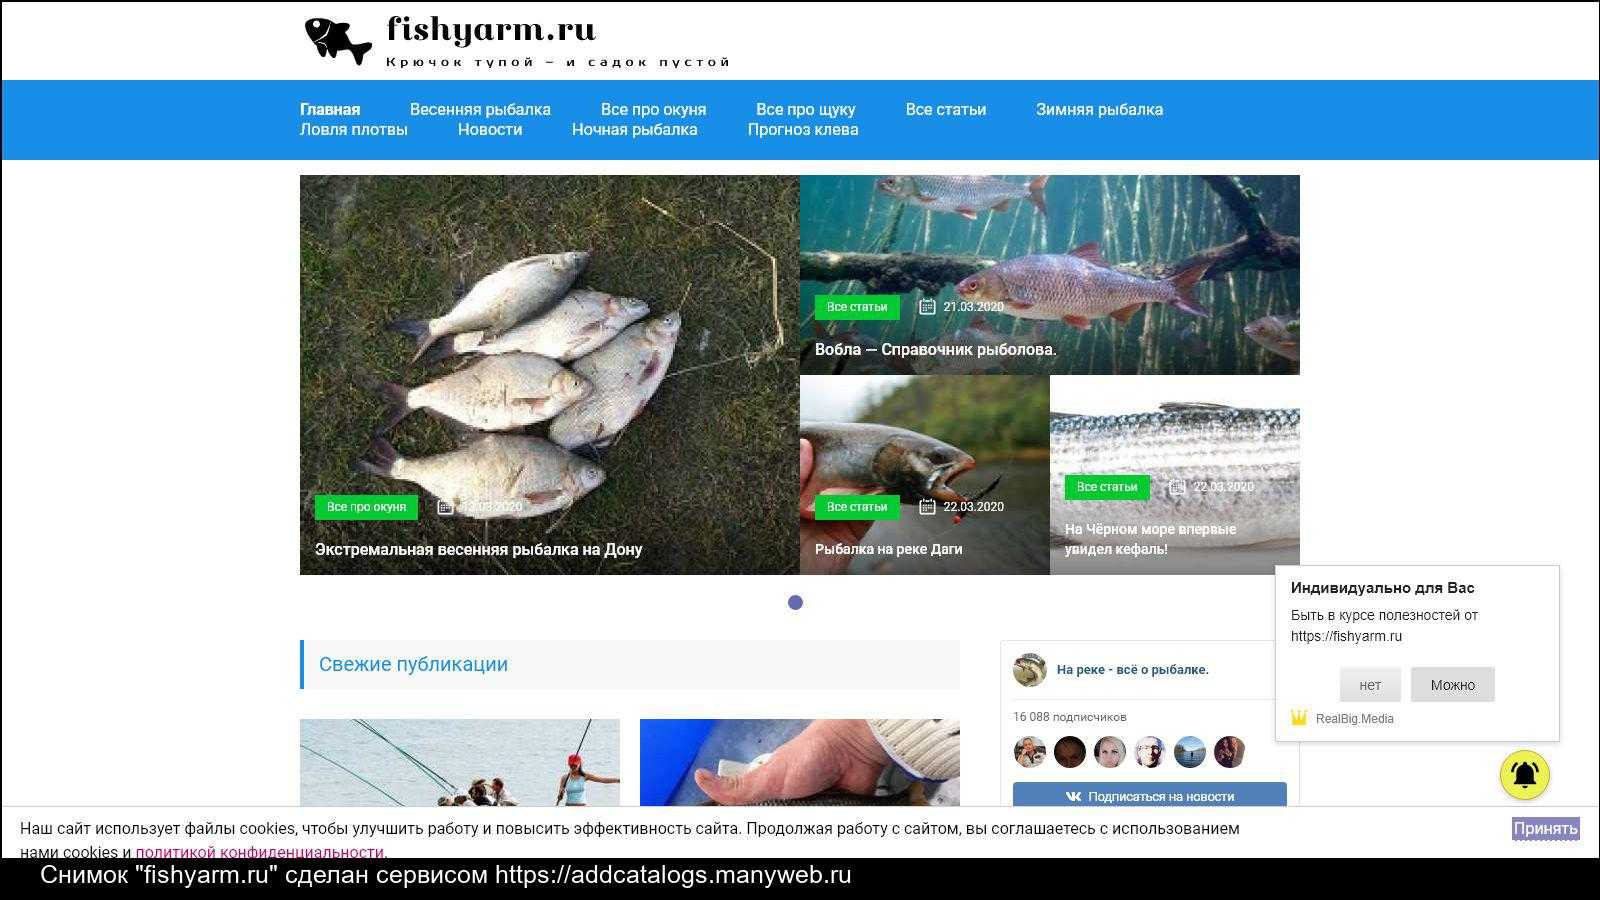 Бигбейтс сайт рыболовный. Рыбалка в Тульской области. Передачи про рыбалку список. Тульская рыбалка в контакте. Тульский рыболовный форум в контакте.